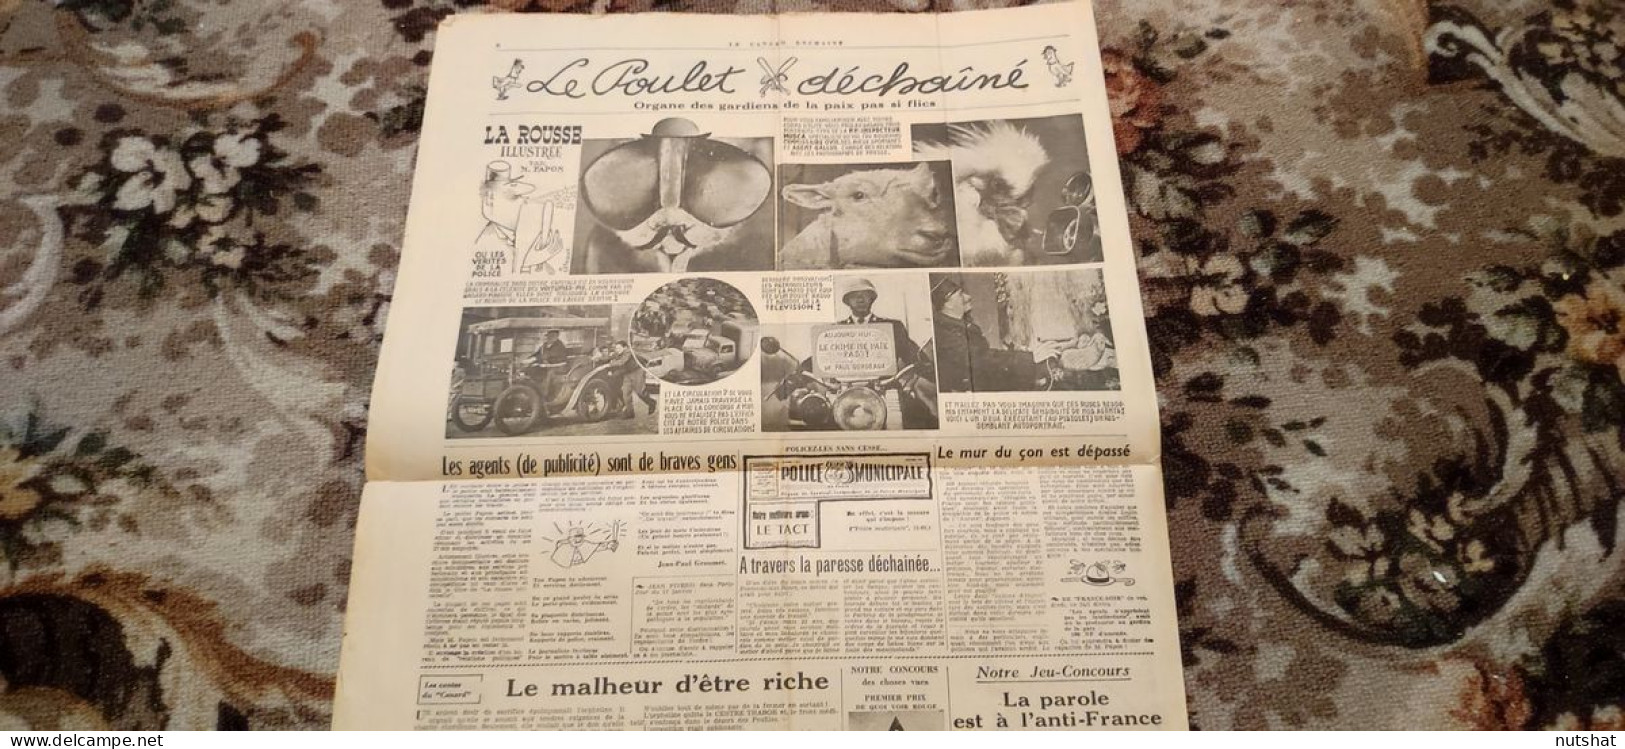 CANARD ENCHAINE 2101 25.01.1961 Le POULET DECHAINE ORGANE Des GARDIENS De PAIX - Politique